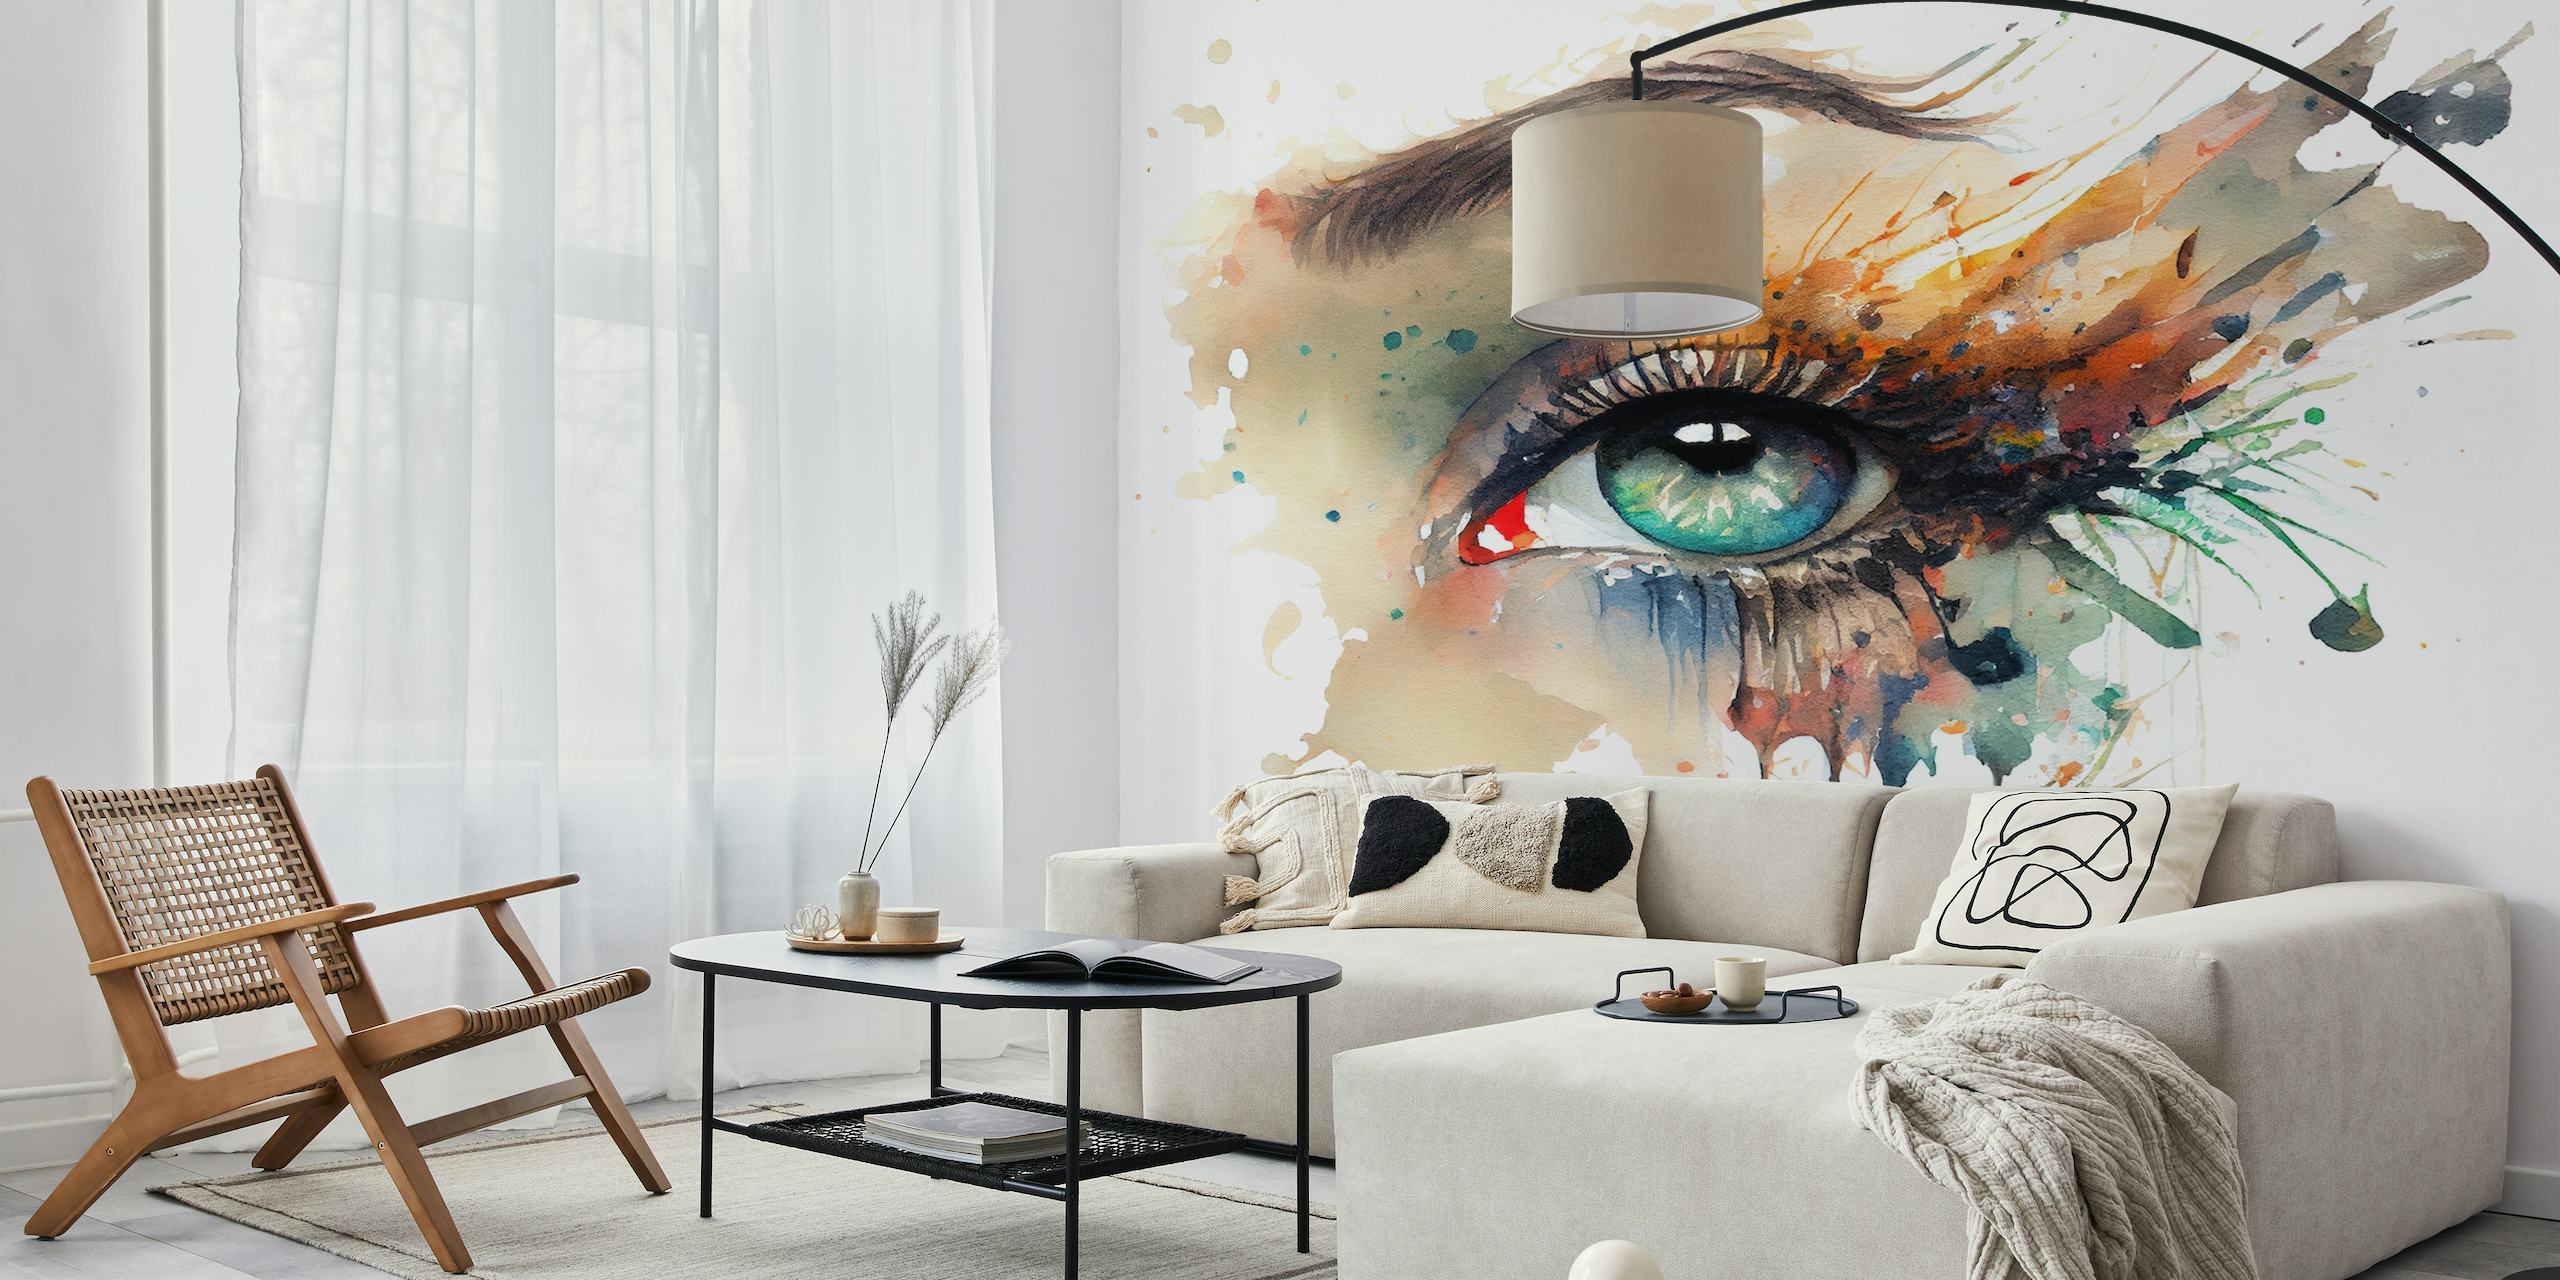 Papier peint artistique représentant un œil de femme peint à l'aquarelle avec des couleurs vives et un effet de peinture dégoulinant